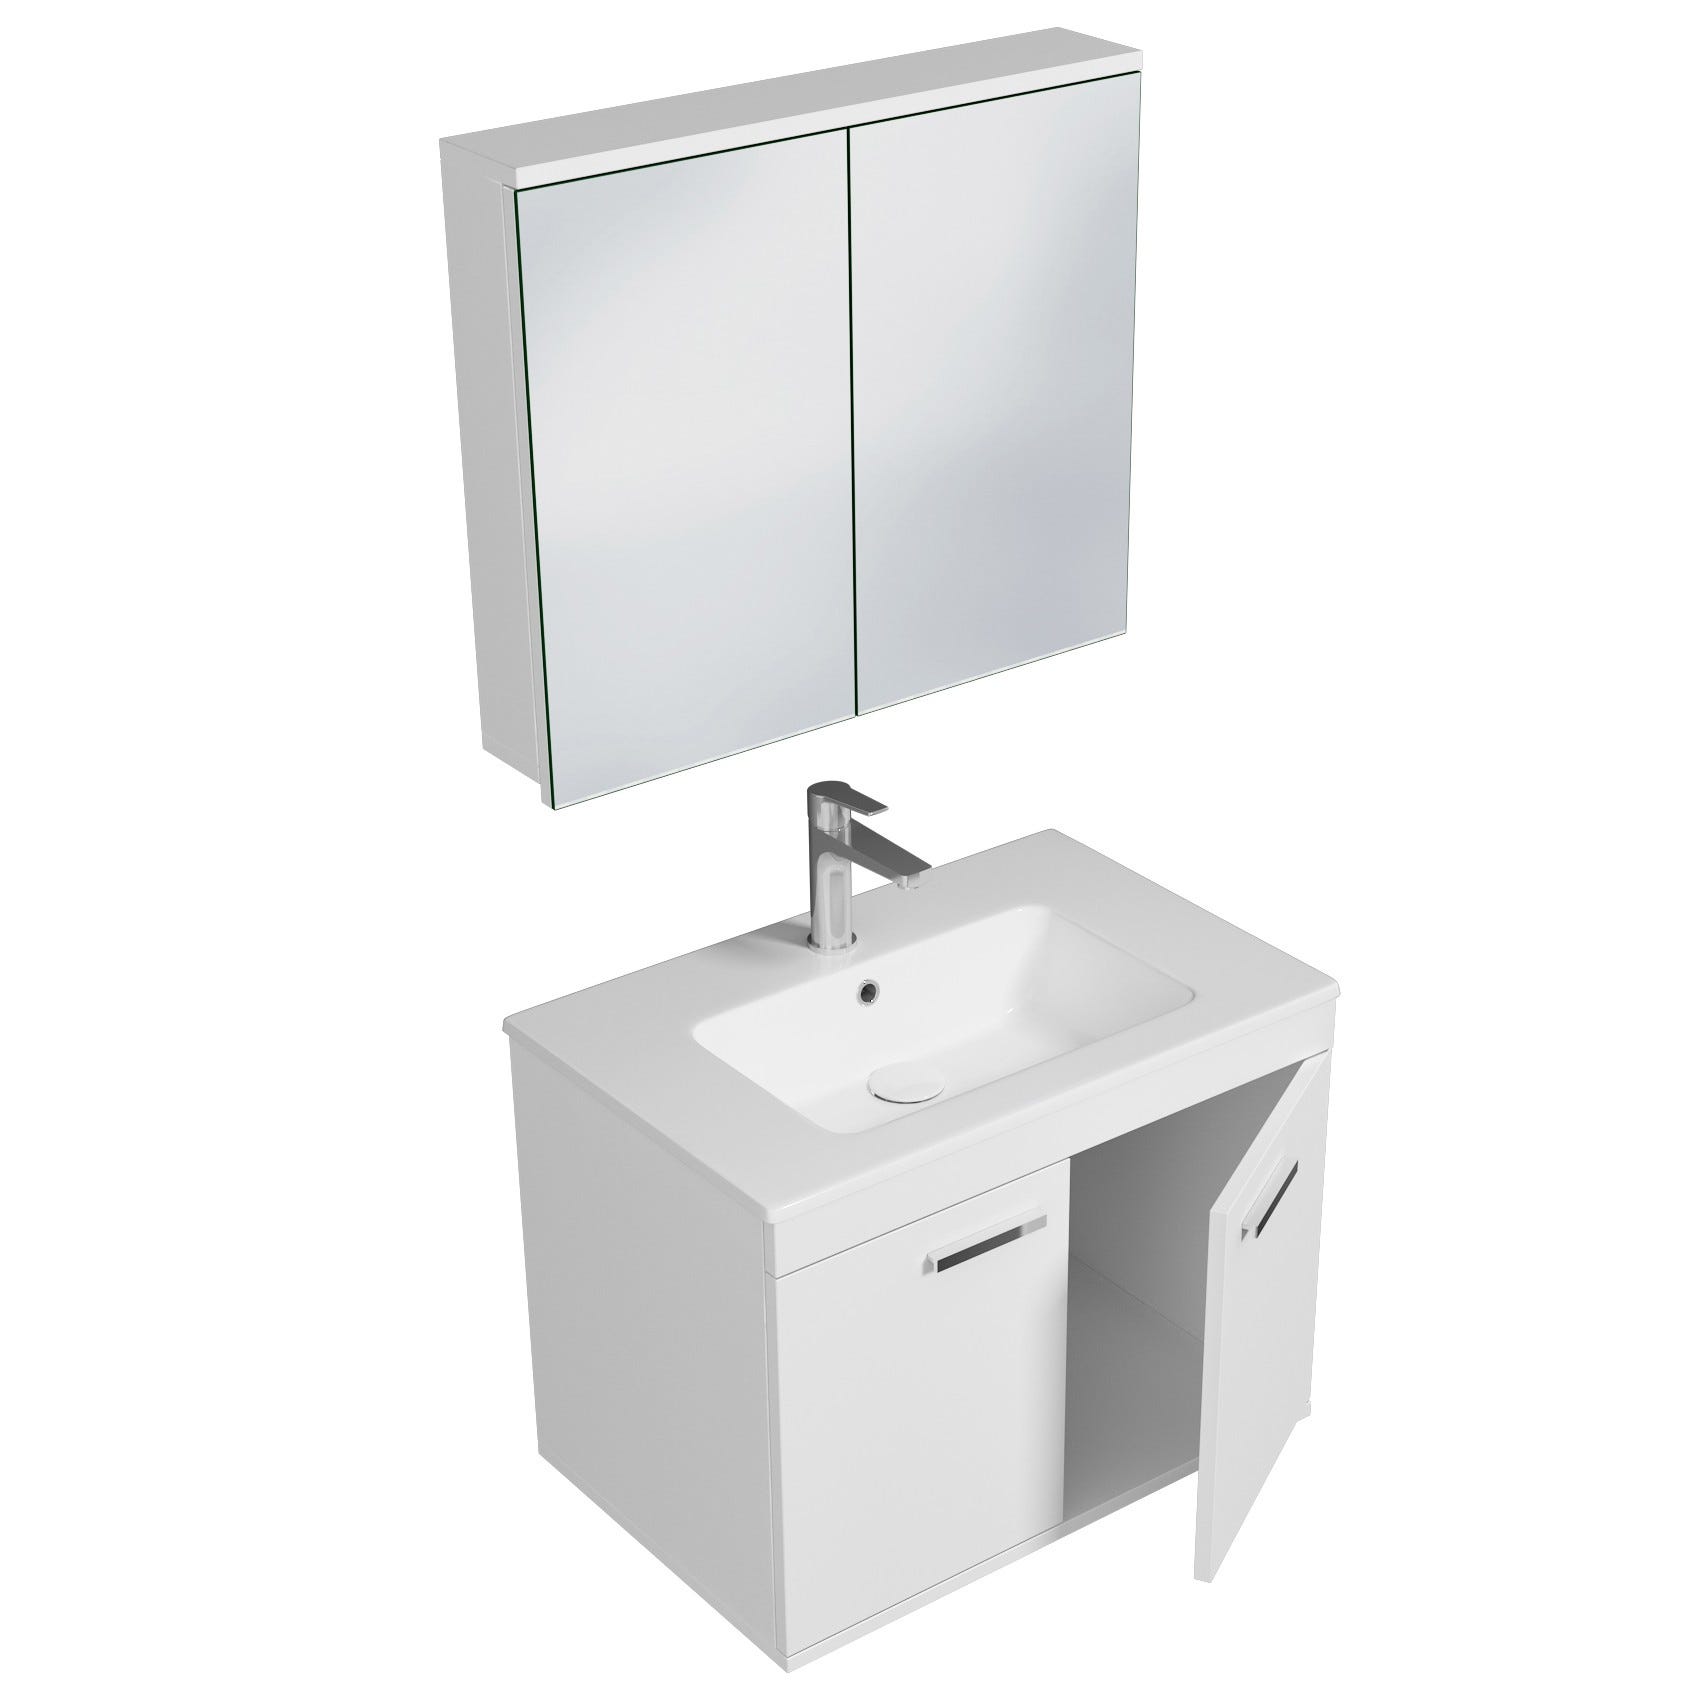 RUBITE Meuble salle de bain simple vasque 2 portes blanc largeur 70 cm + miroir armoire 1